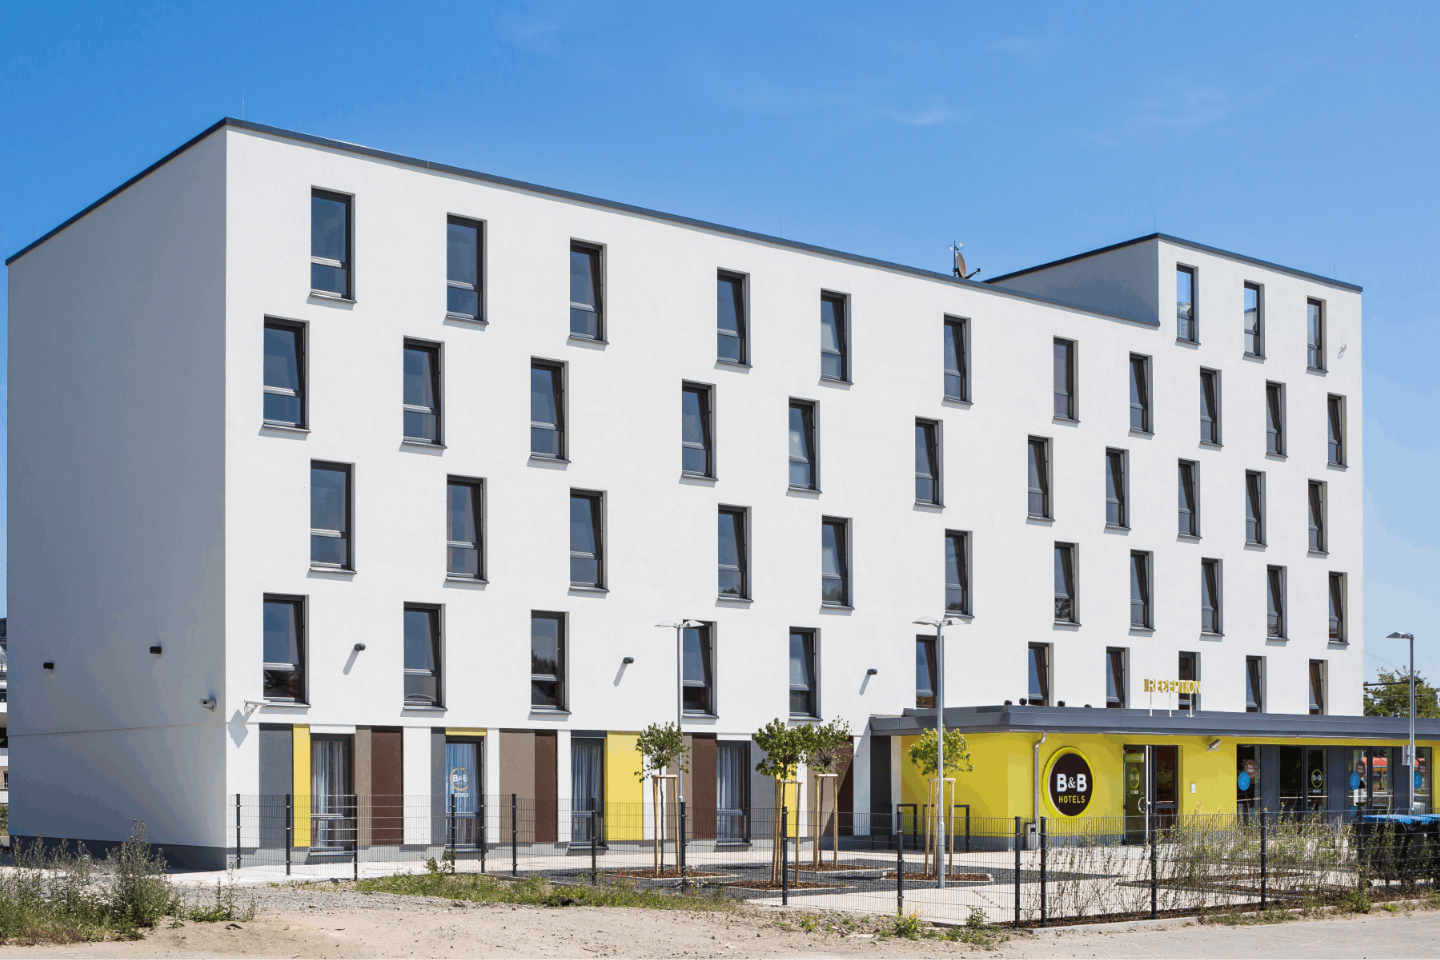 B&B HOTEL Bad Homburg v. d. Höhe - Projektbild - 1